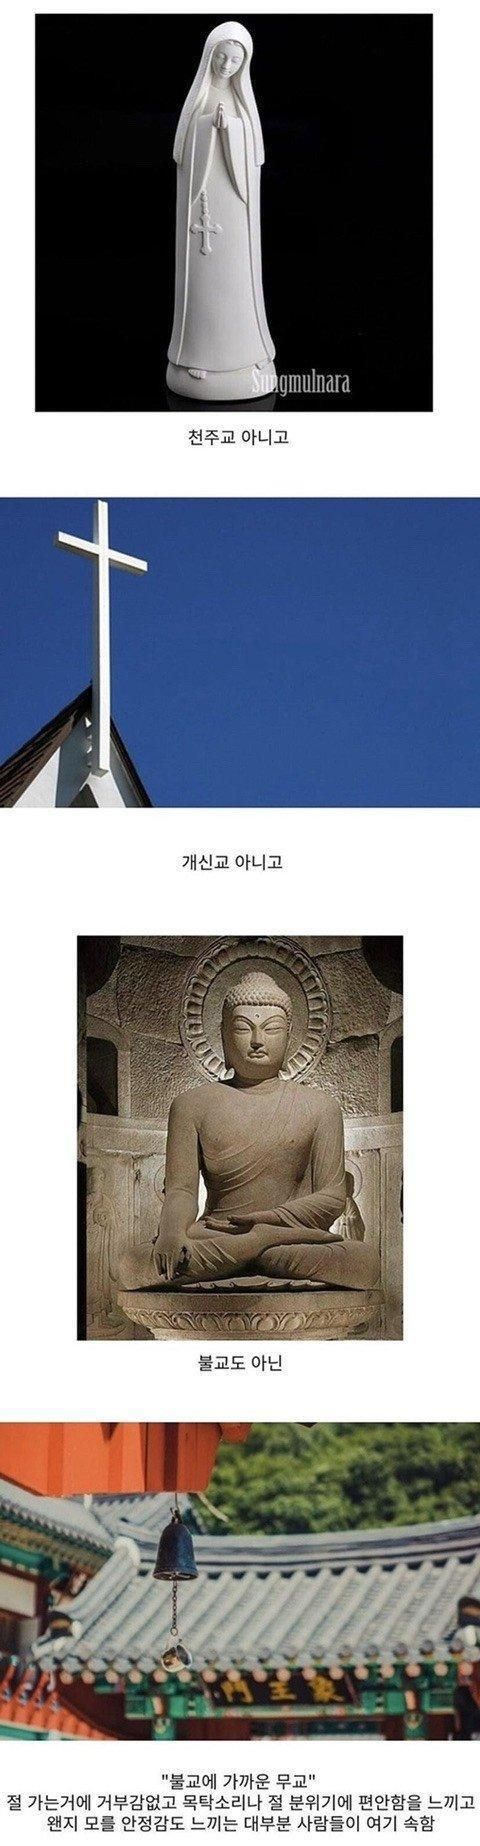 한국에 은근히 많은 종교 믿음 유형